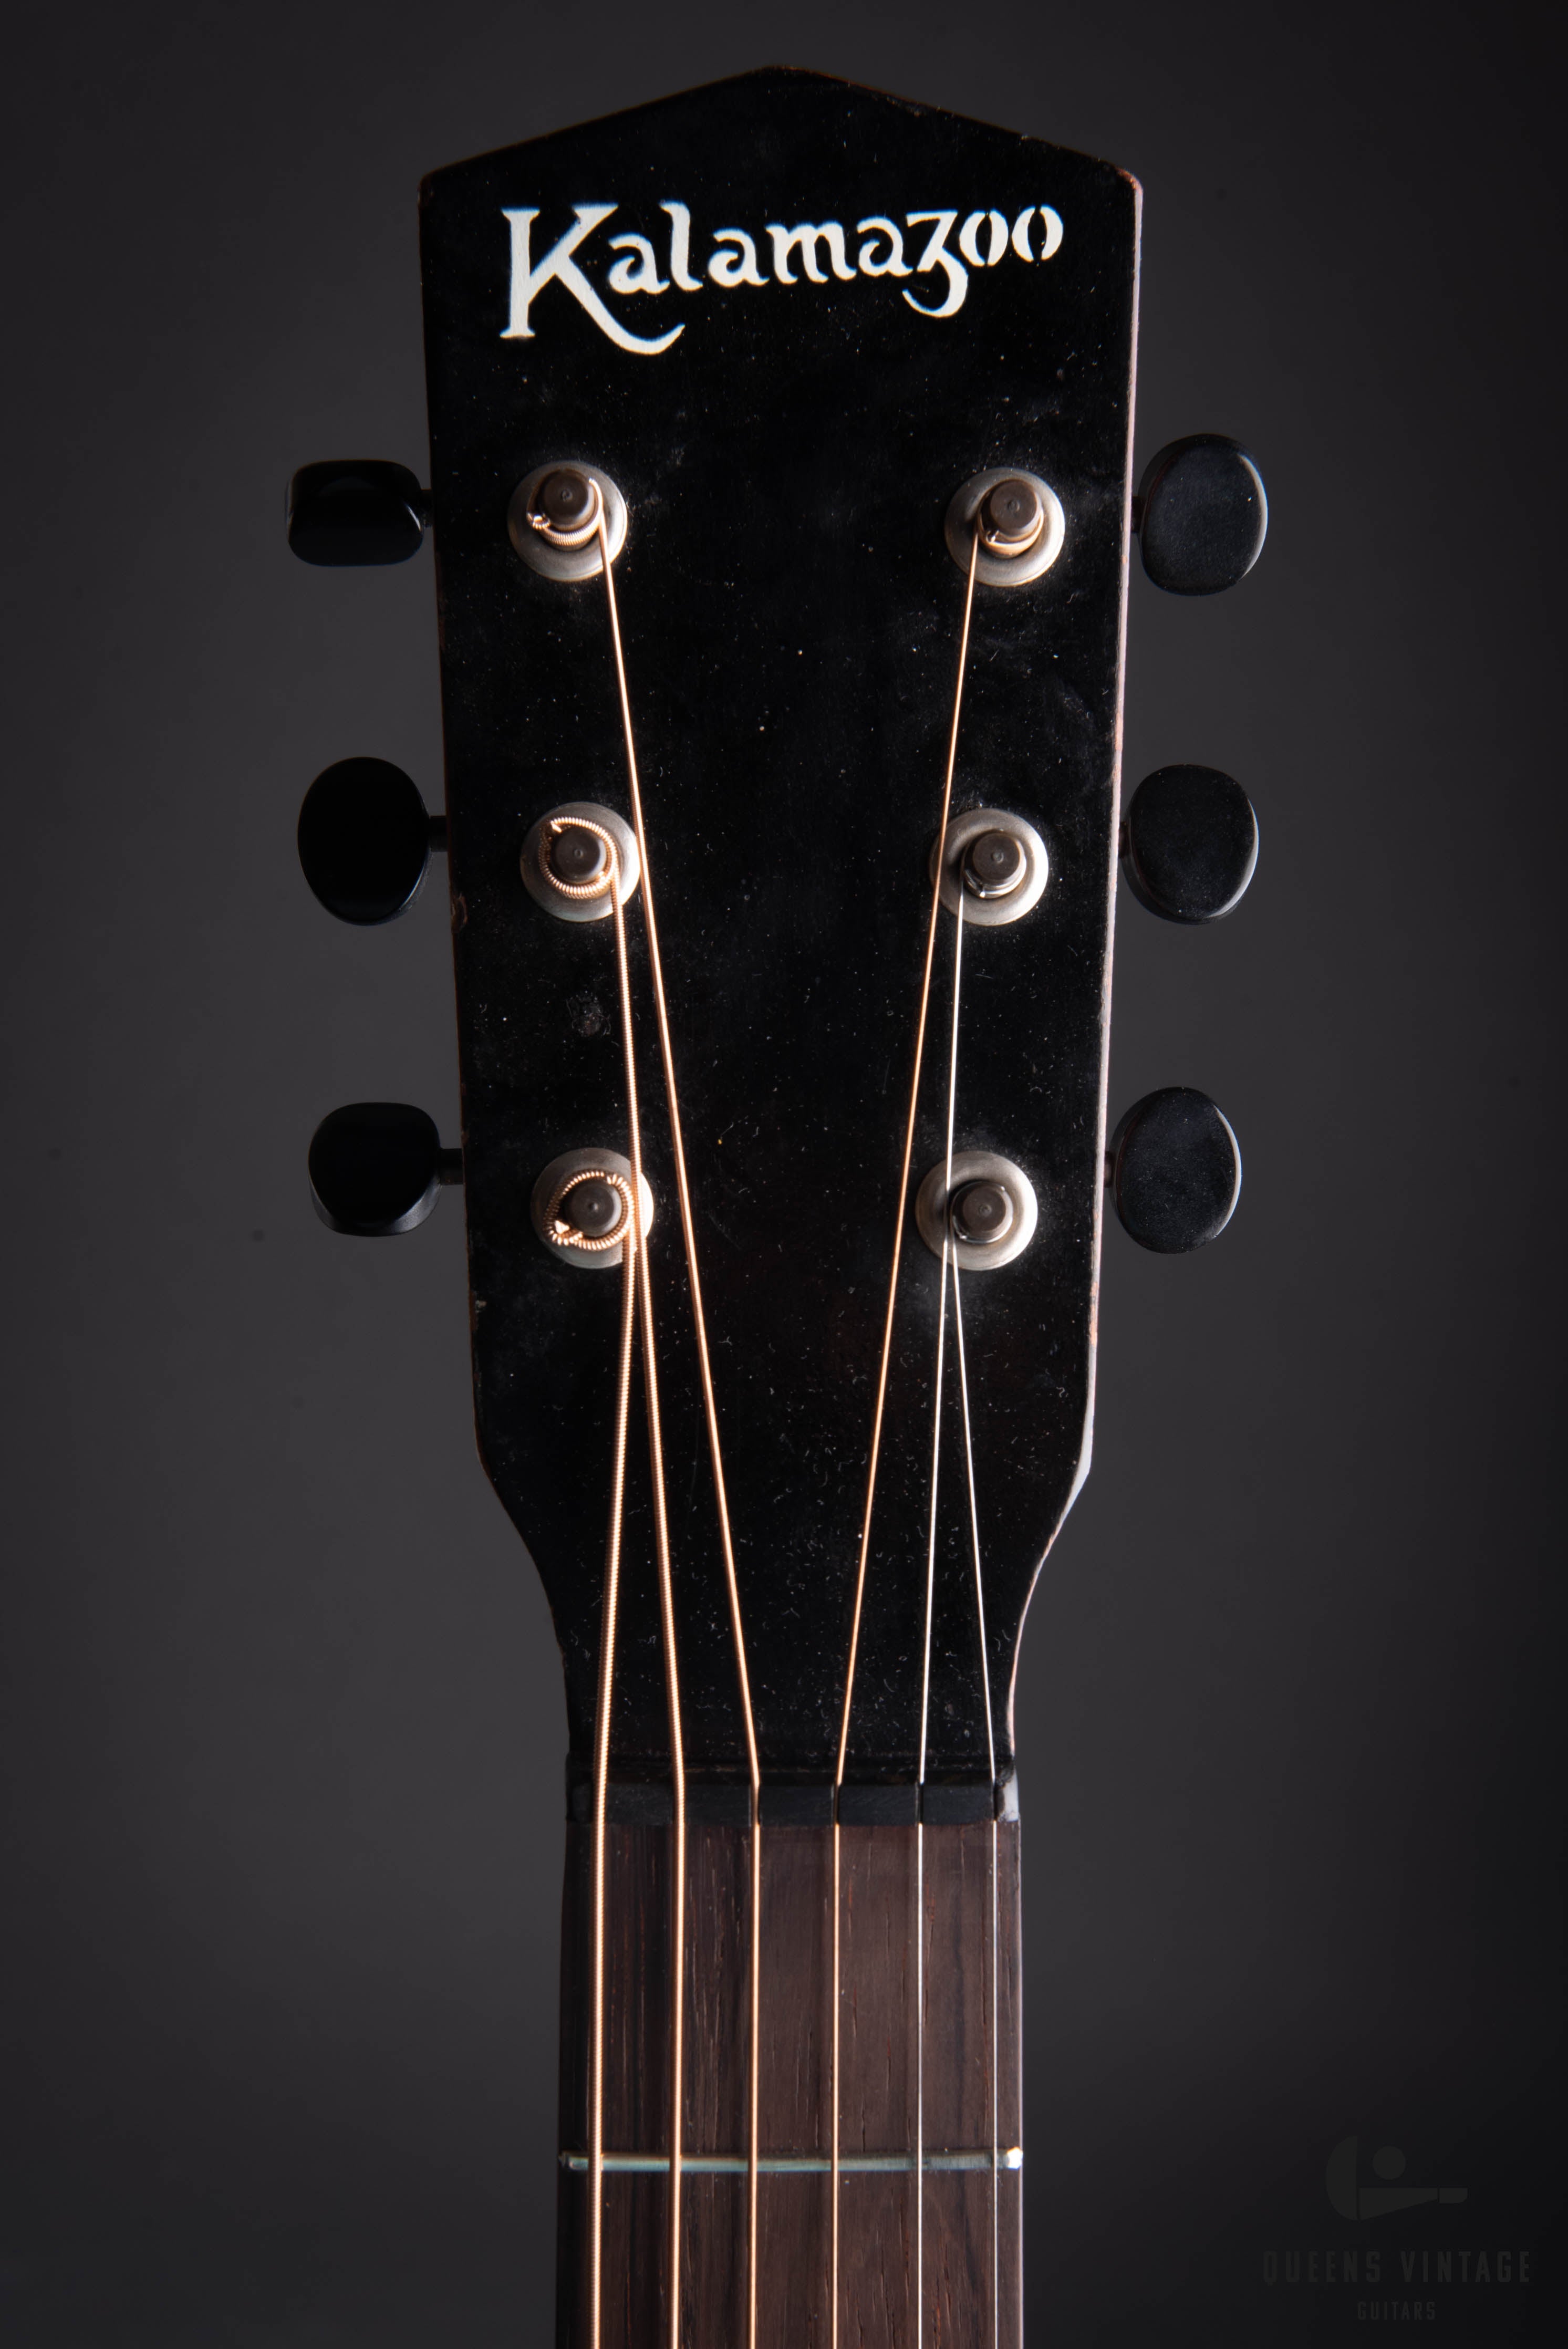 c. 1936  Kalamazoo KG-14 Acoustic Guitar